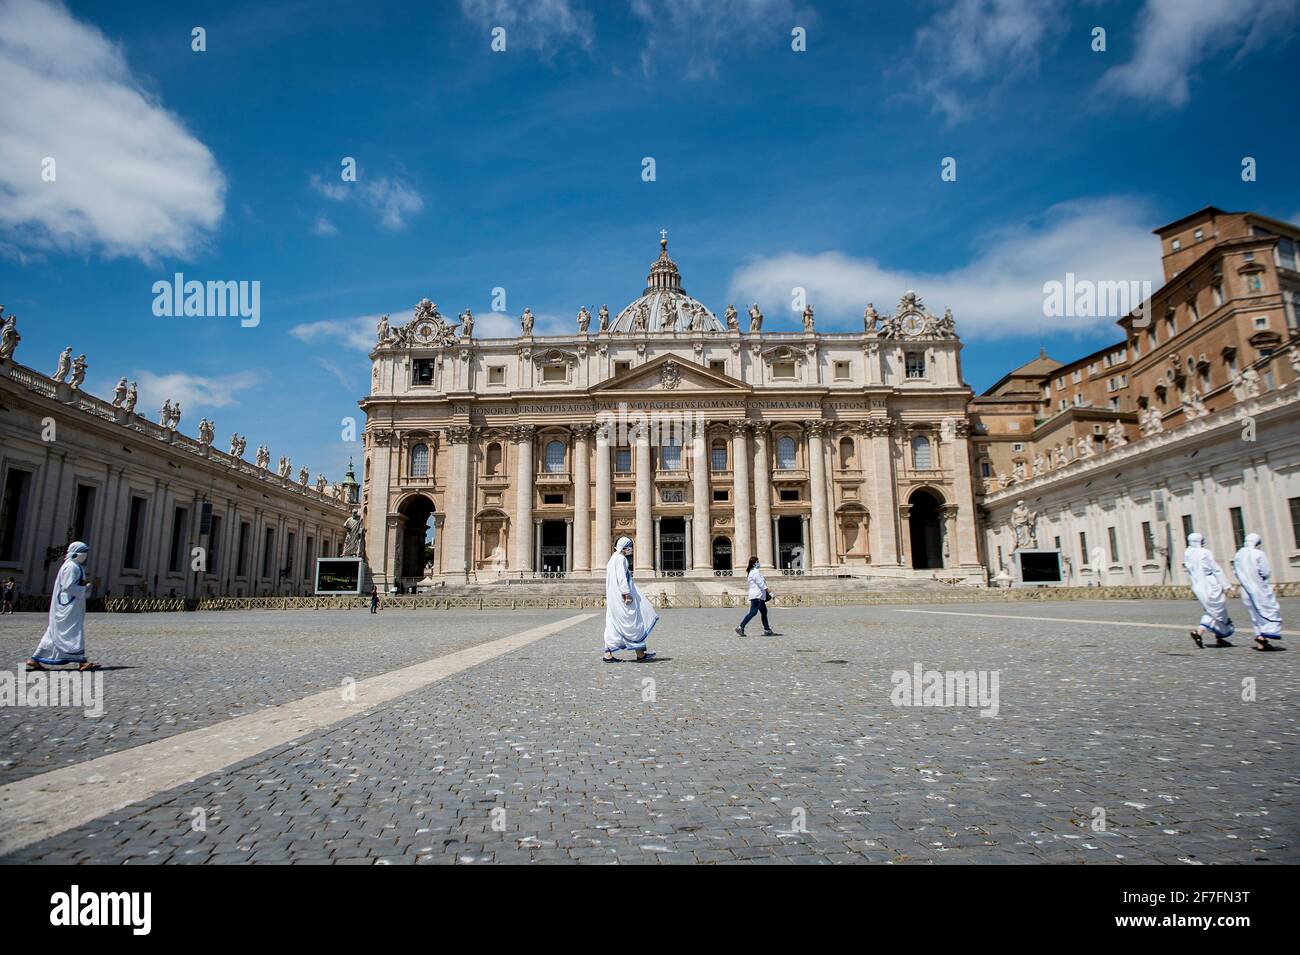 Am 24 2020. Mai besuchen Nonnen das Angelusgebet von Papst Franziskus auf dem Petersplatz im Vatikan, Rom, Latium, Italien Stockfoto